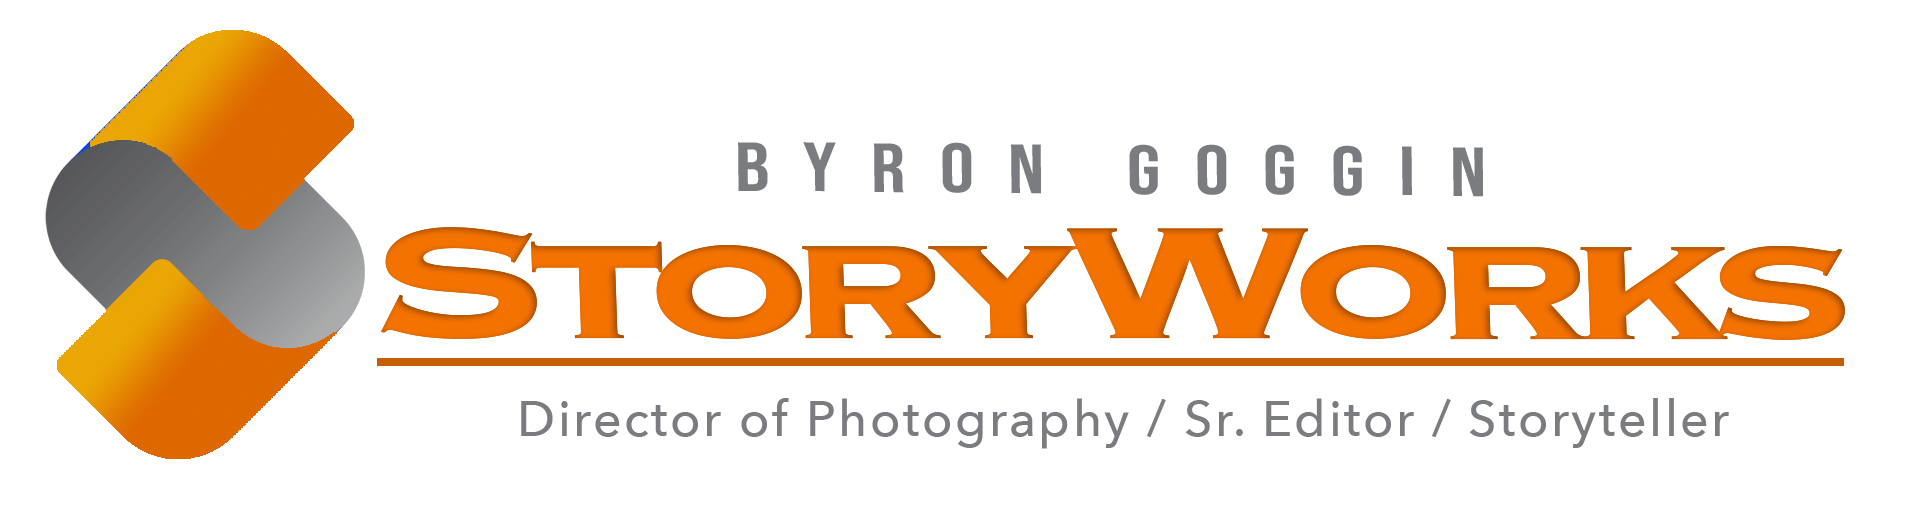 Storyworks by Byron Goggin